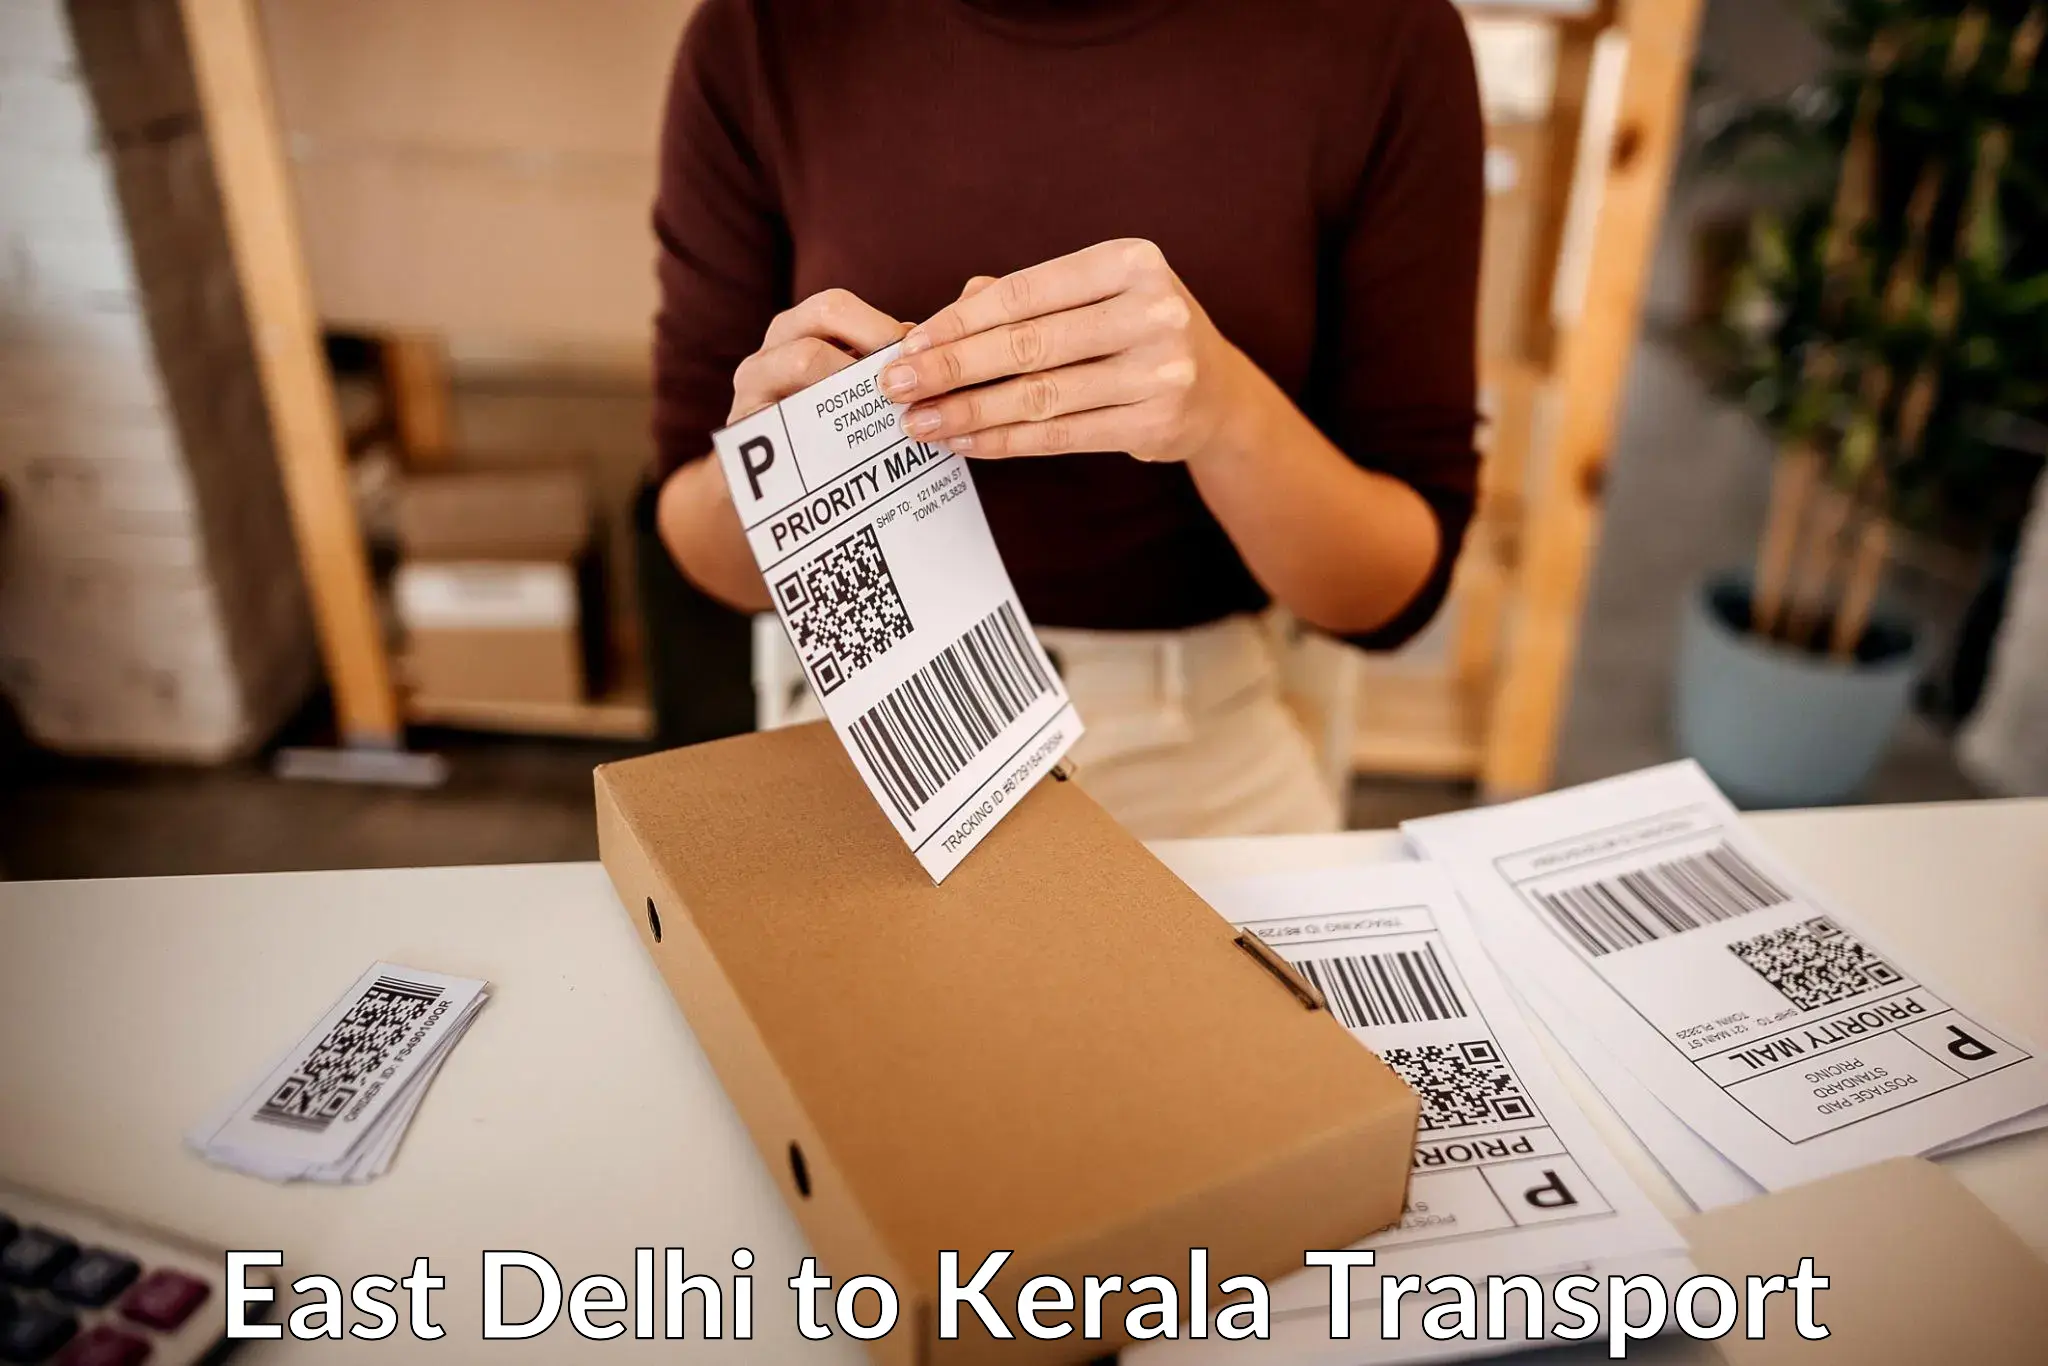 Logistics transportation services East Delhi to Kerala